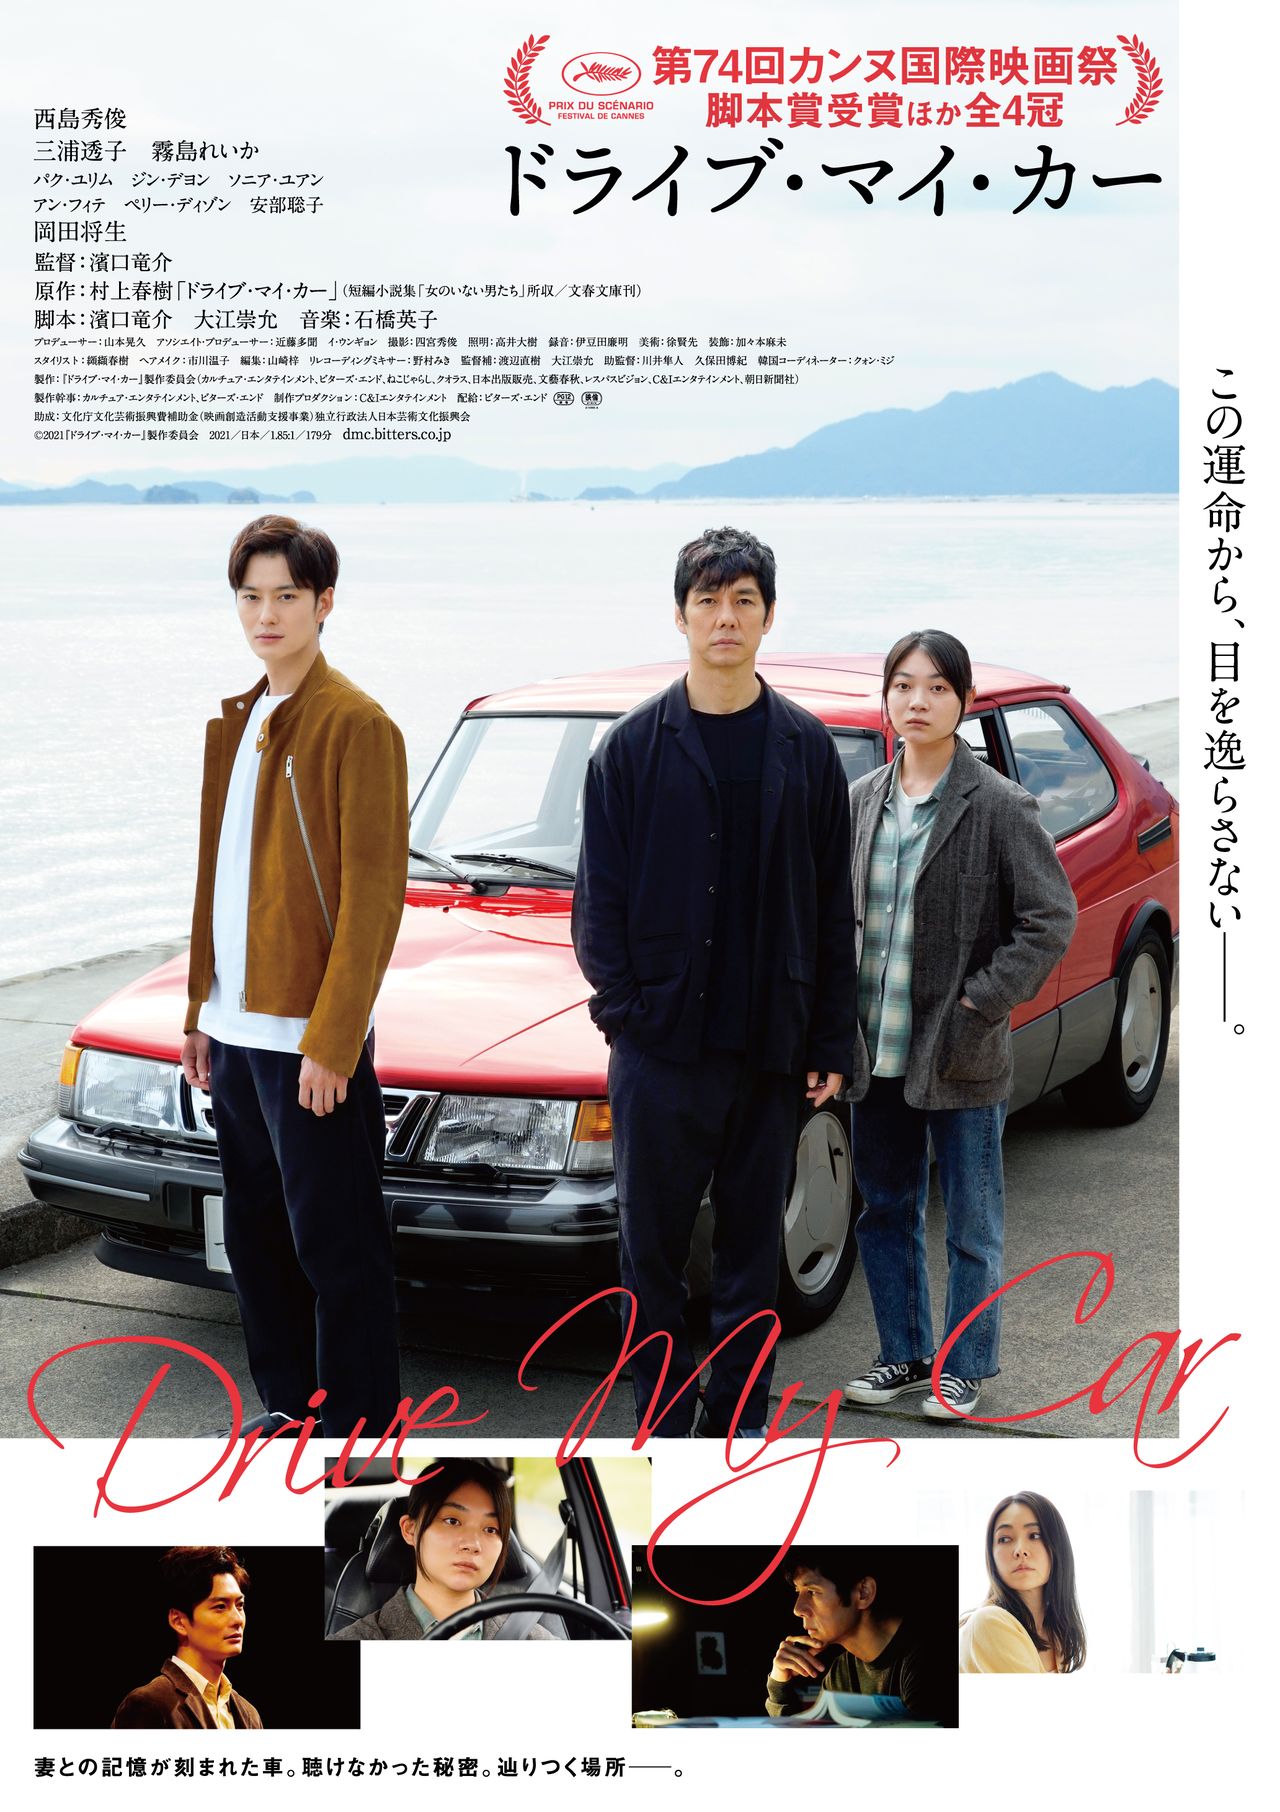  الملصق الدعائي للفيلم الياباني. (الشركة المنتجة لفيلم Drive My Car 2021)